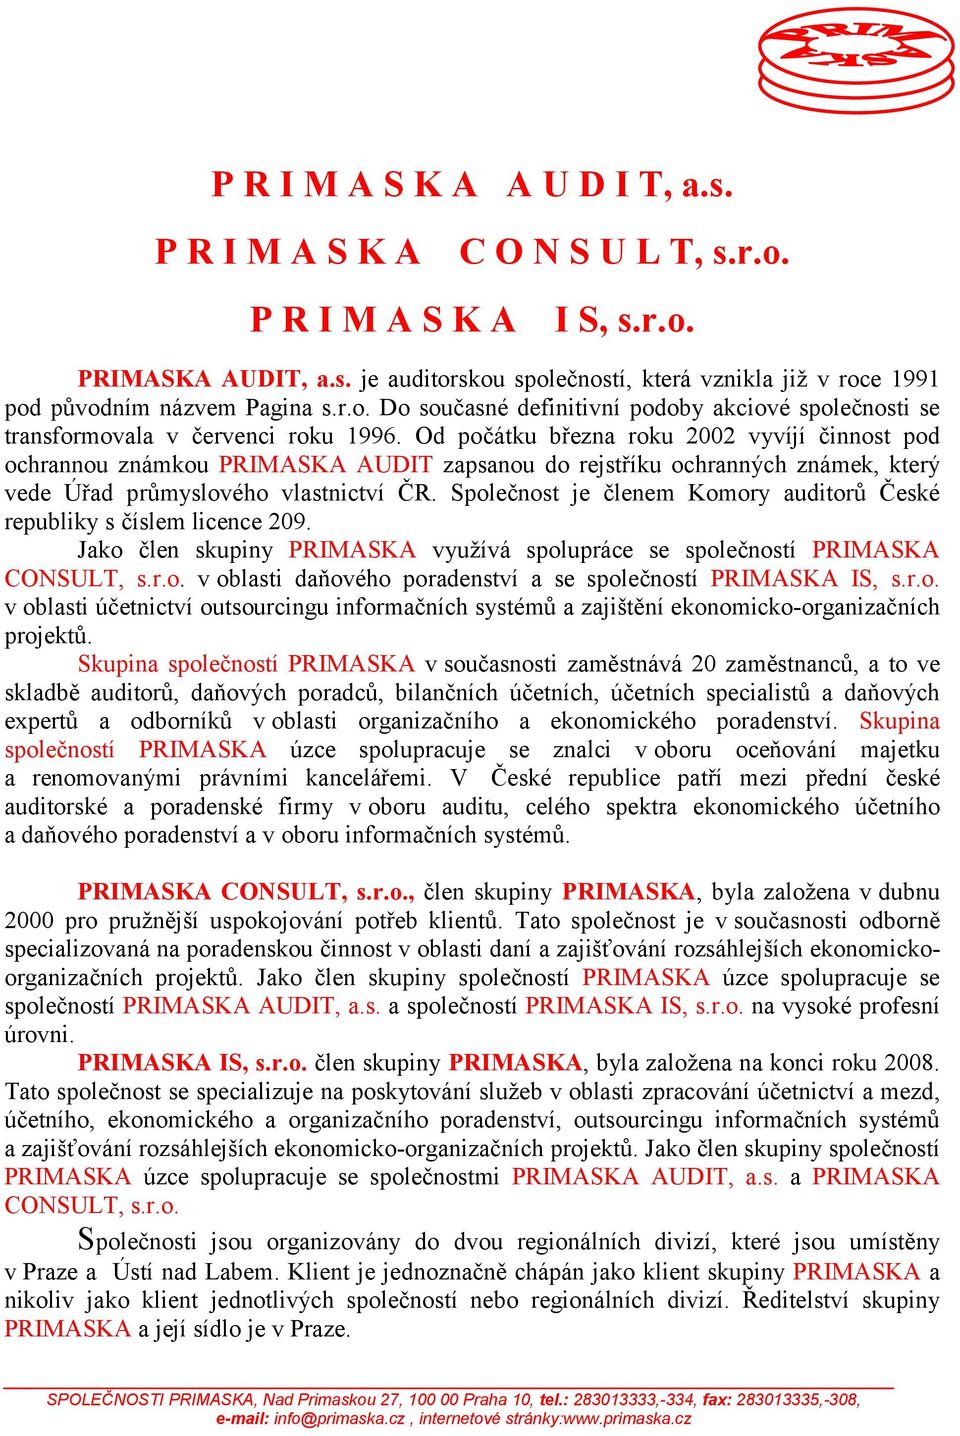 Od počátku března roku 2002 vyvíjí činnost pod ochrannou známkou PRIMASKA AUDIT zapsanou do rejstříku ochranných známek, který vede Úřad průmyslového vlastnictví ČR.